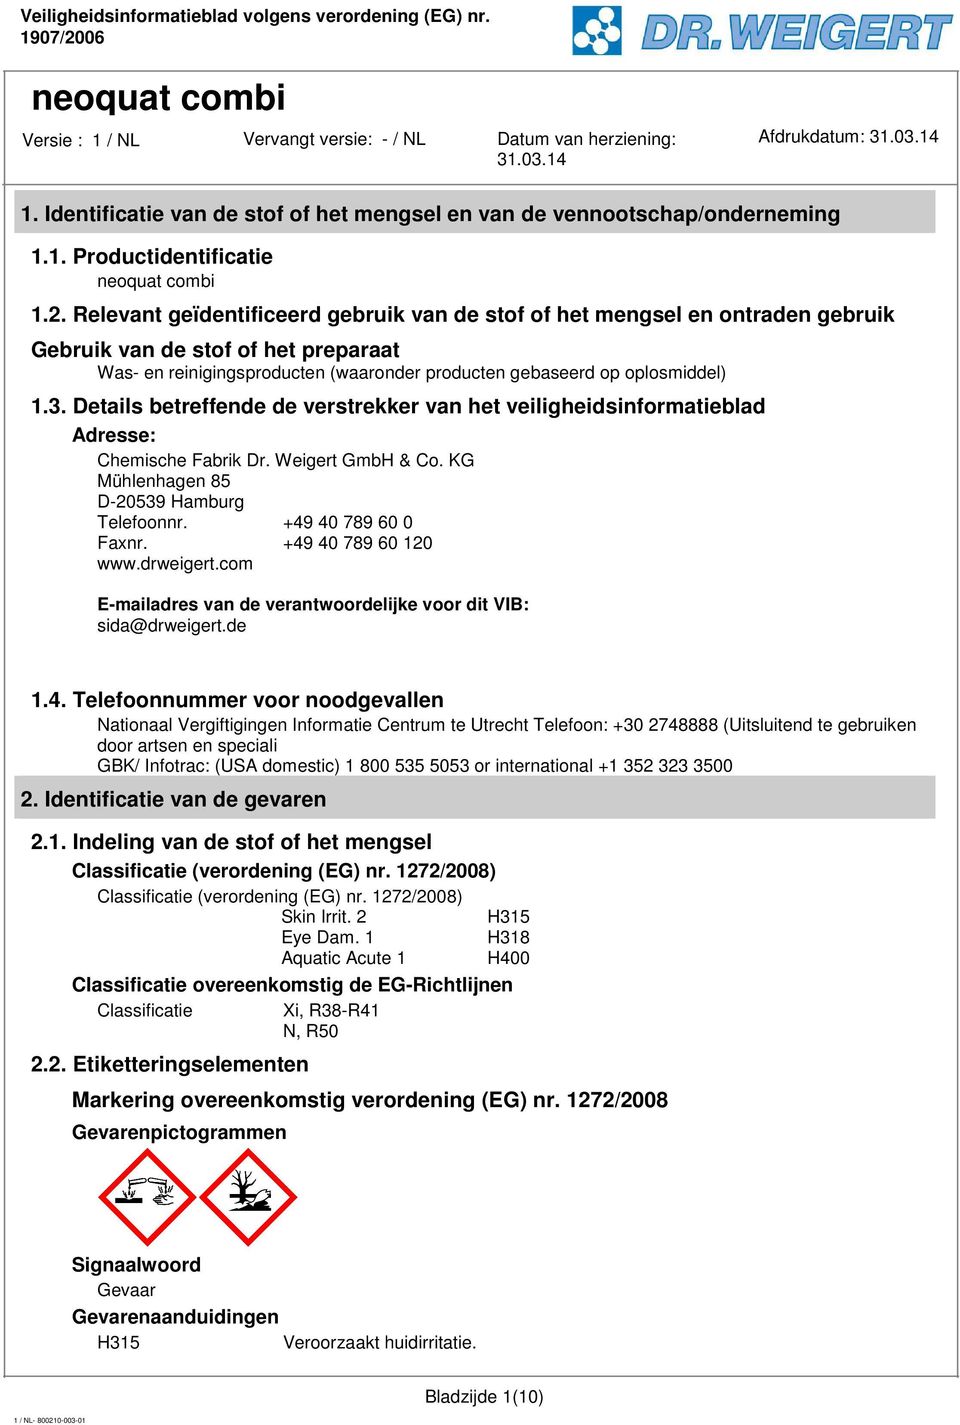 Details betreffende de verstrekker van het veiligheidsinformatieblad Adresse: Chemische Fabrik Dr. Weigert GmbH & Co. KG Mühlenhagen 85 D-20539 Hamburg Telefoonnr. +49 40 789 60 0 Faxnr.